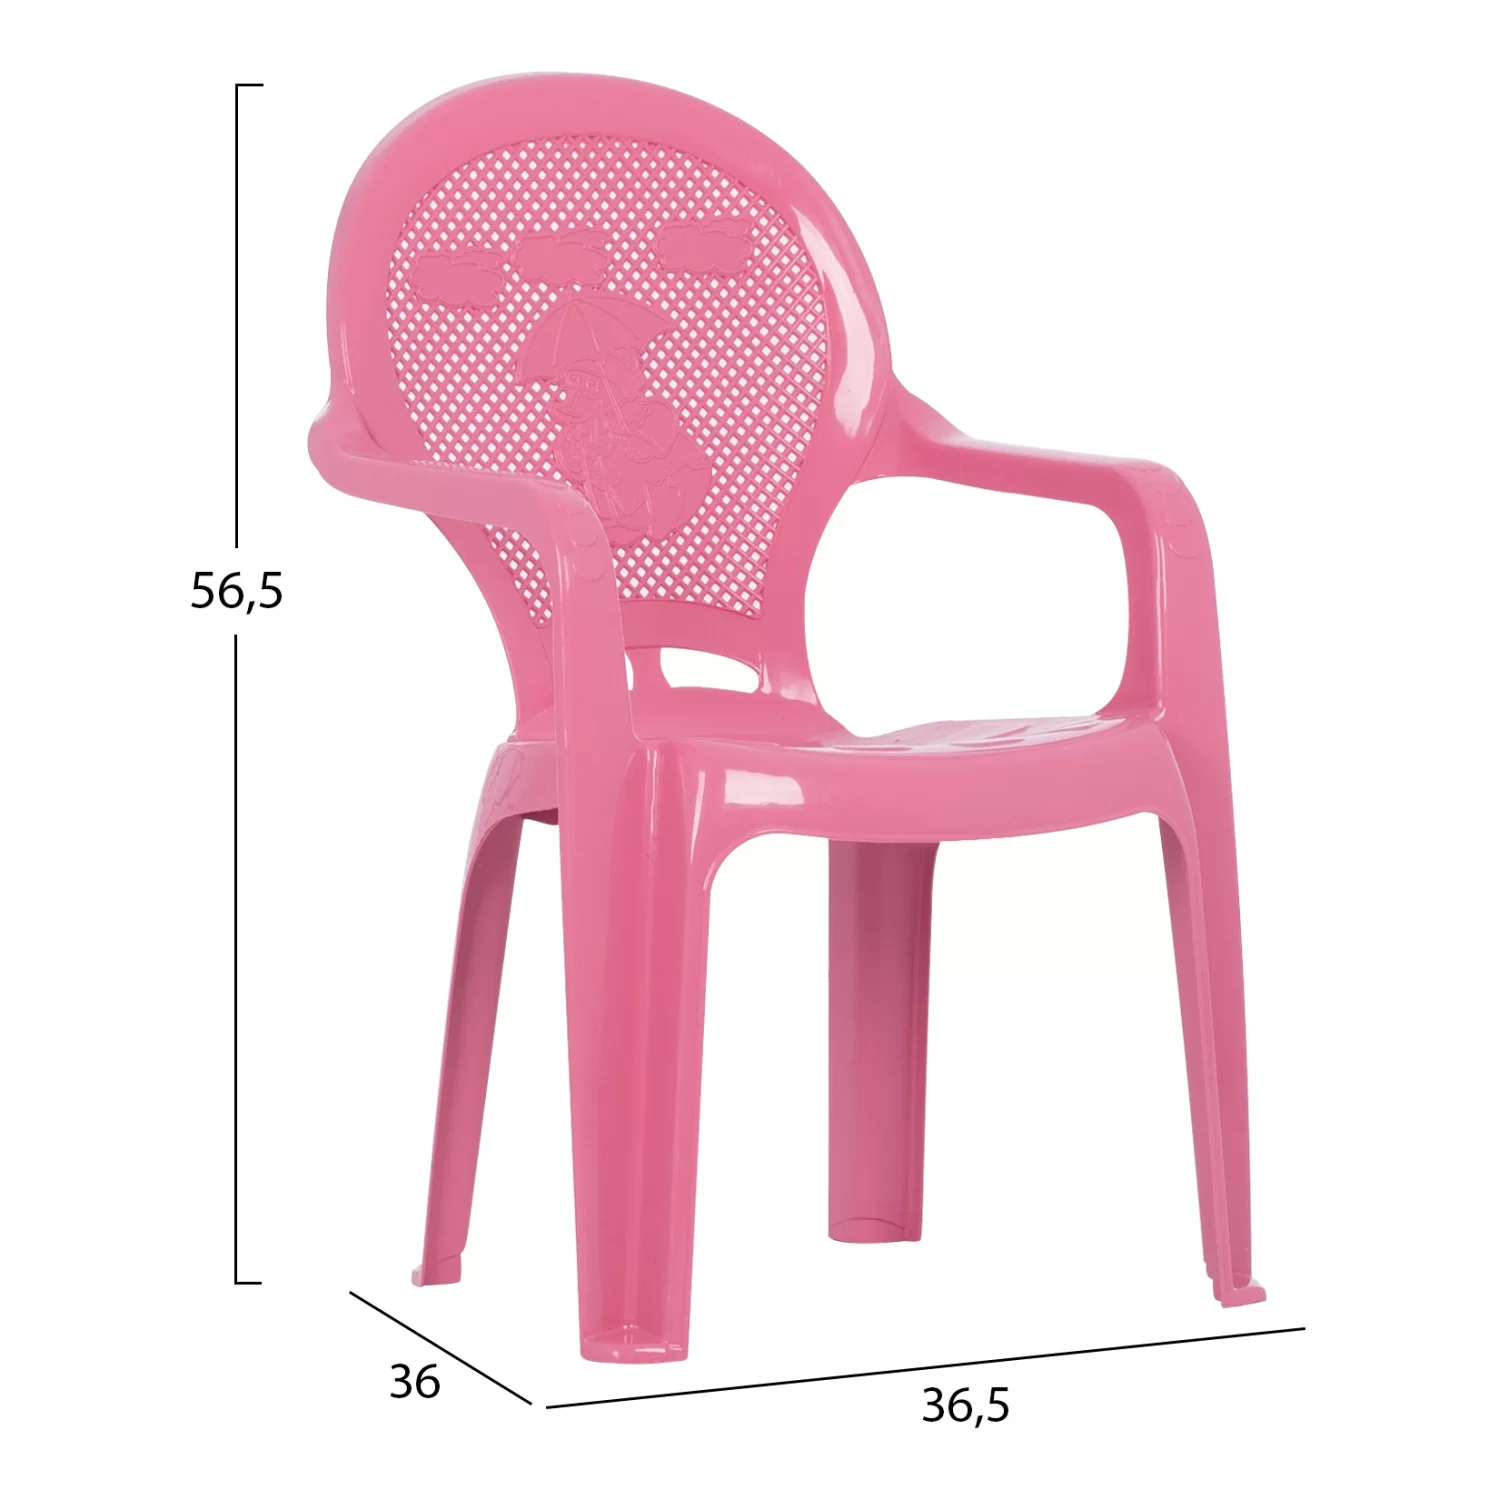 Scaun copii plastic roz 36.5x36.5x56.5 cm2 1